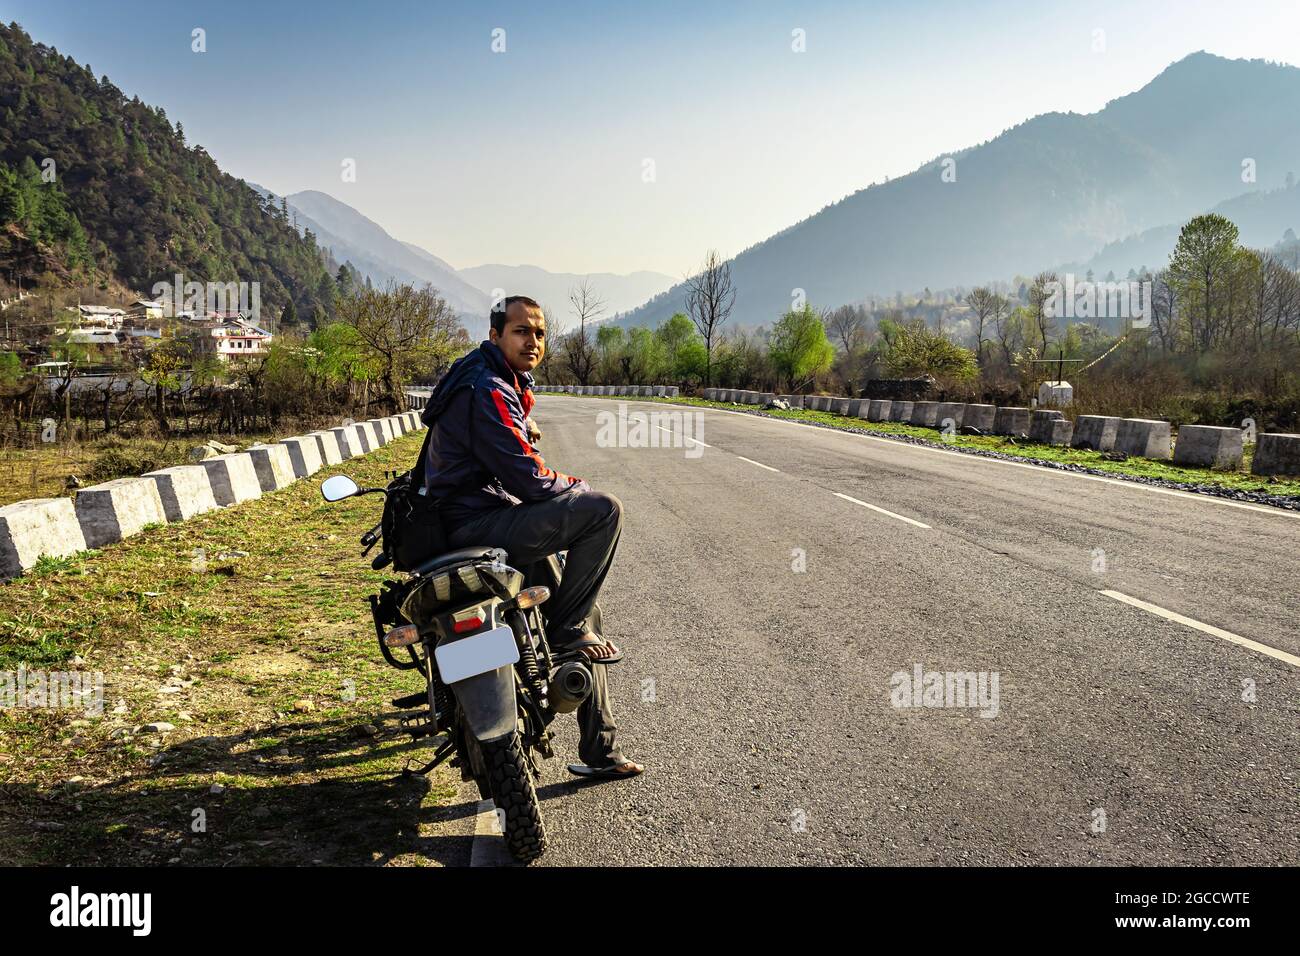 man sitting at motorcycle at tarmac road with beautiful natural view at morning image is taken at shergaon arunachal pradesh india. Stock Photo